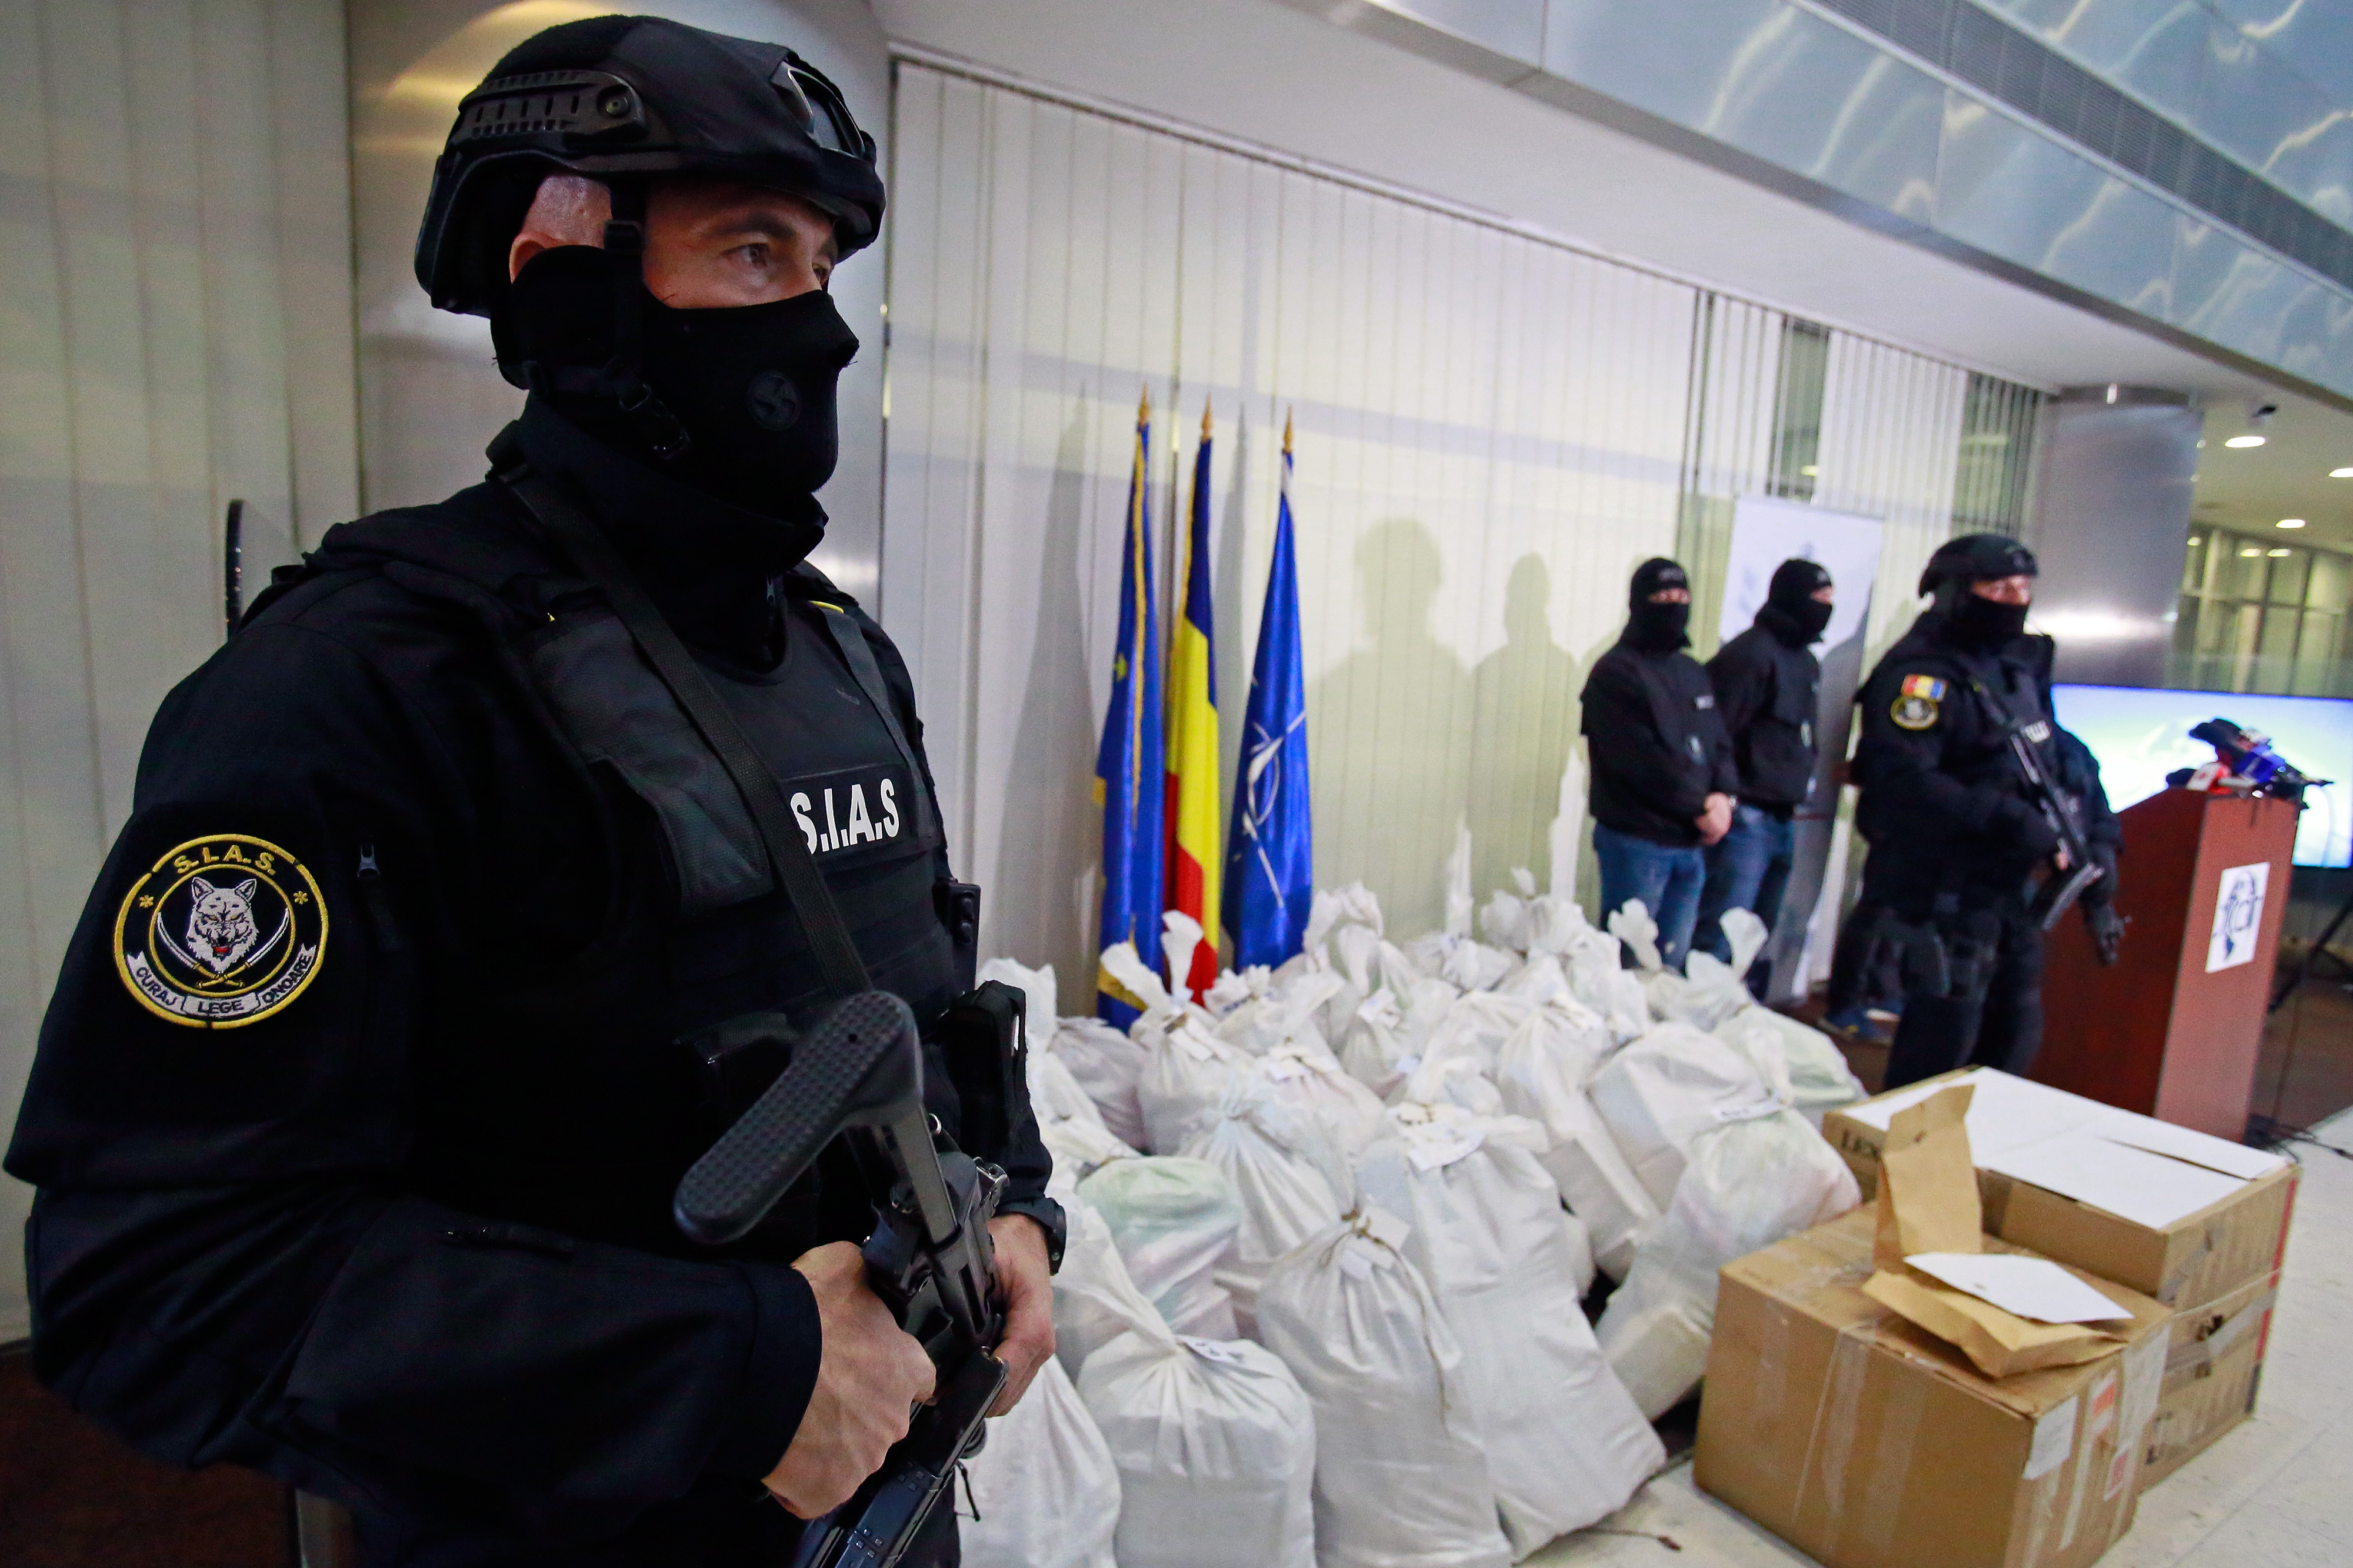 3月26日,在罗马尼亚布加勒斯特举行的新闻发布会上,警察在袋装的